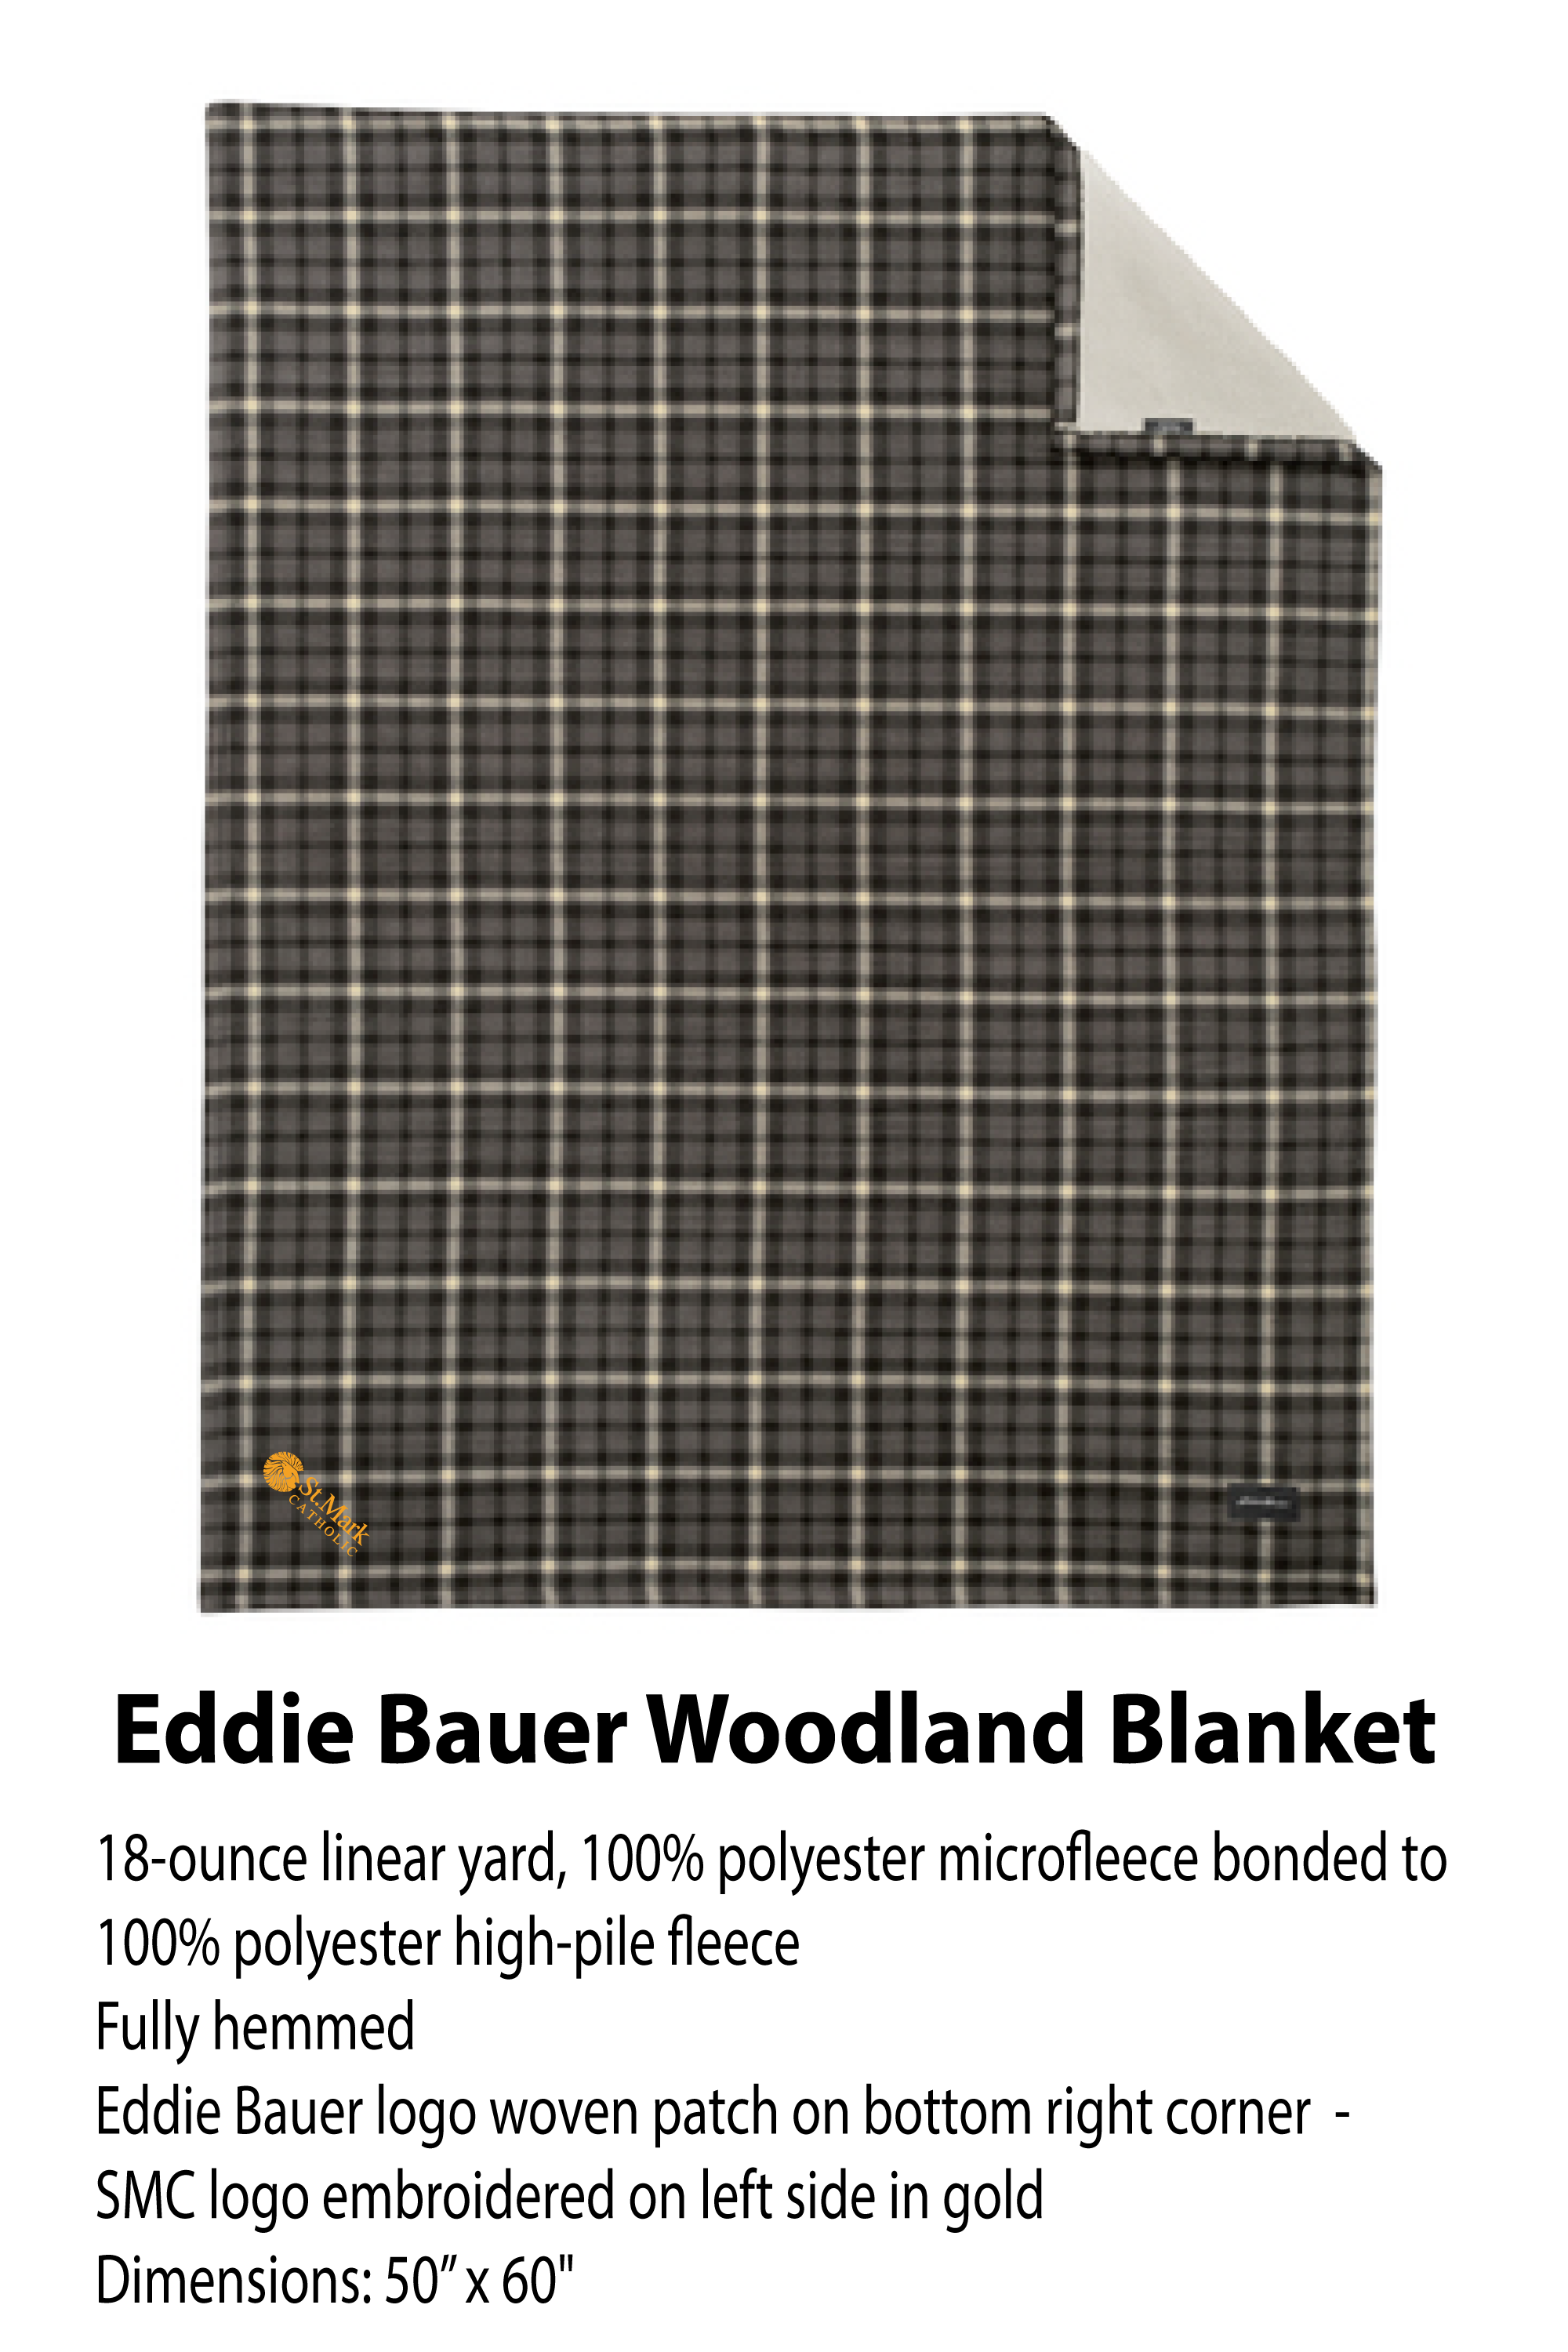 Embroidered - Eddie Bauer Woodland Blanket